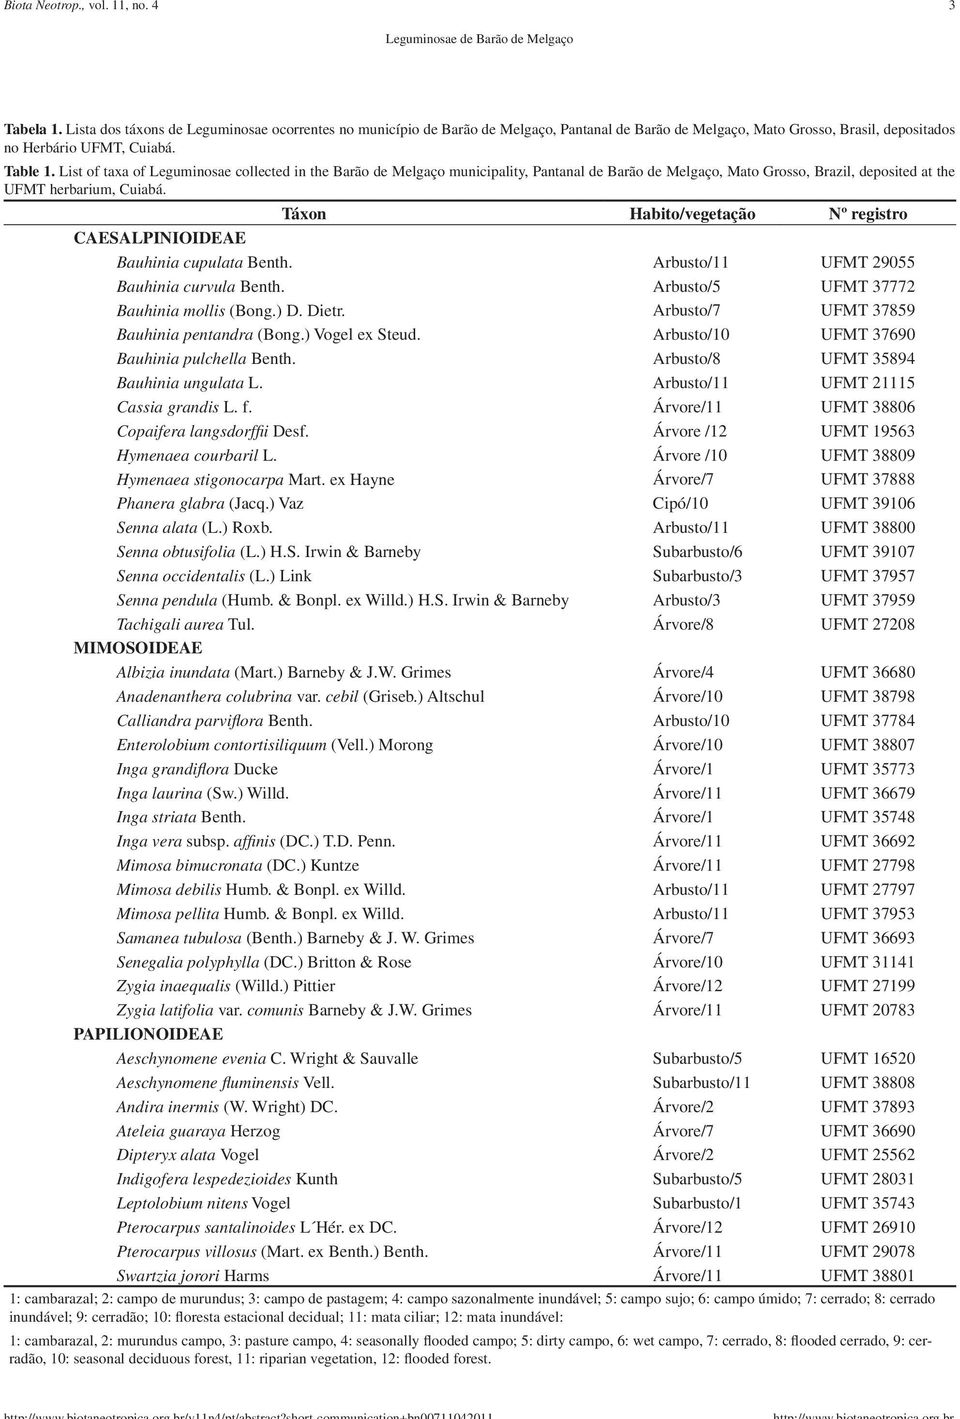 List of taxa of Leguminosae collected in the Barão de Melgaço municipality, Pantanal de Barão de Melgaço, Mato Grosso, Brazil, deposited at the UFMT herbarium, Cuiabá.